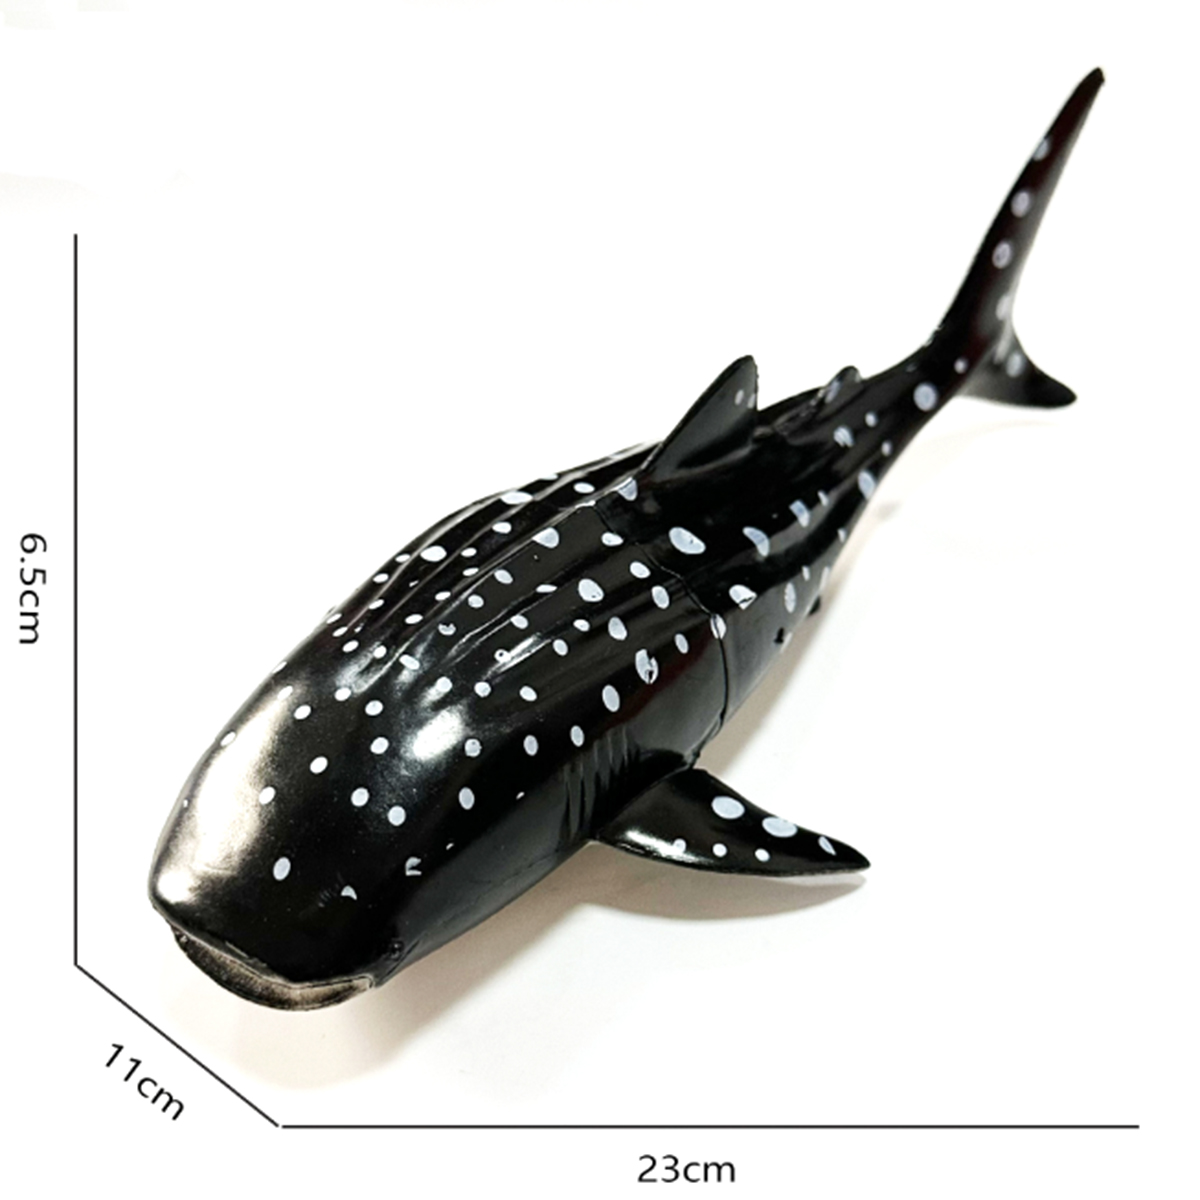 Mô hình Cá mập voi (cá nhám voi) 23x5 cm - Đồ chơi động vật biển New4all CMV1814 Rhincodon typus